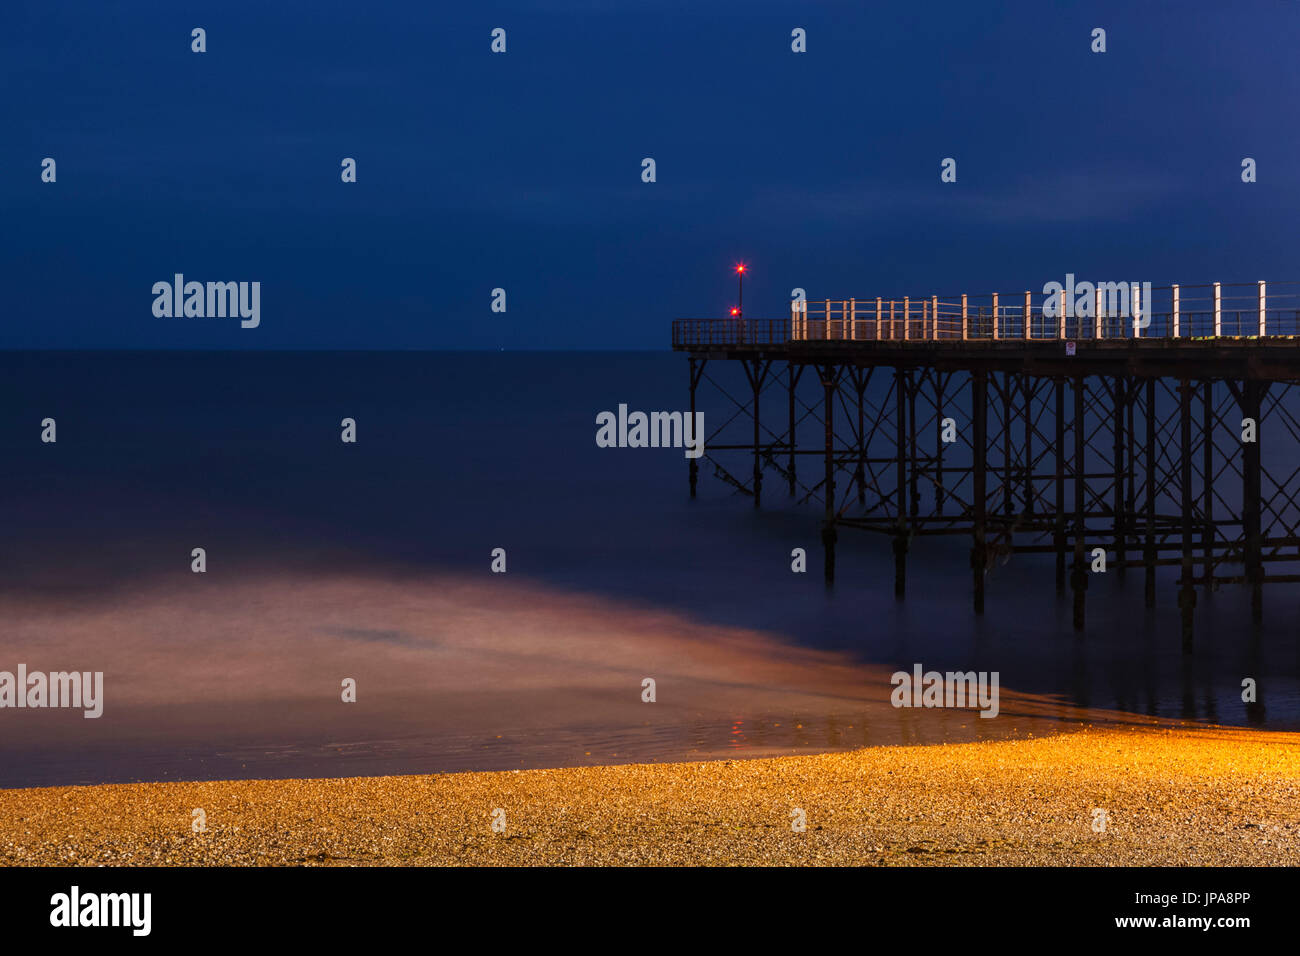 Inghilterra, West Sussex, Bognor Regis, Bognor Regis Pier e spiaggia Foto Stock